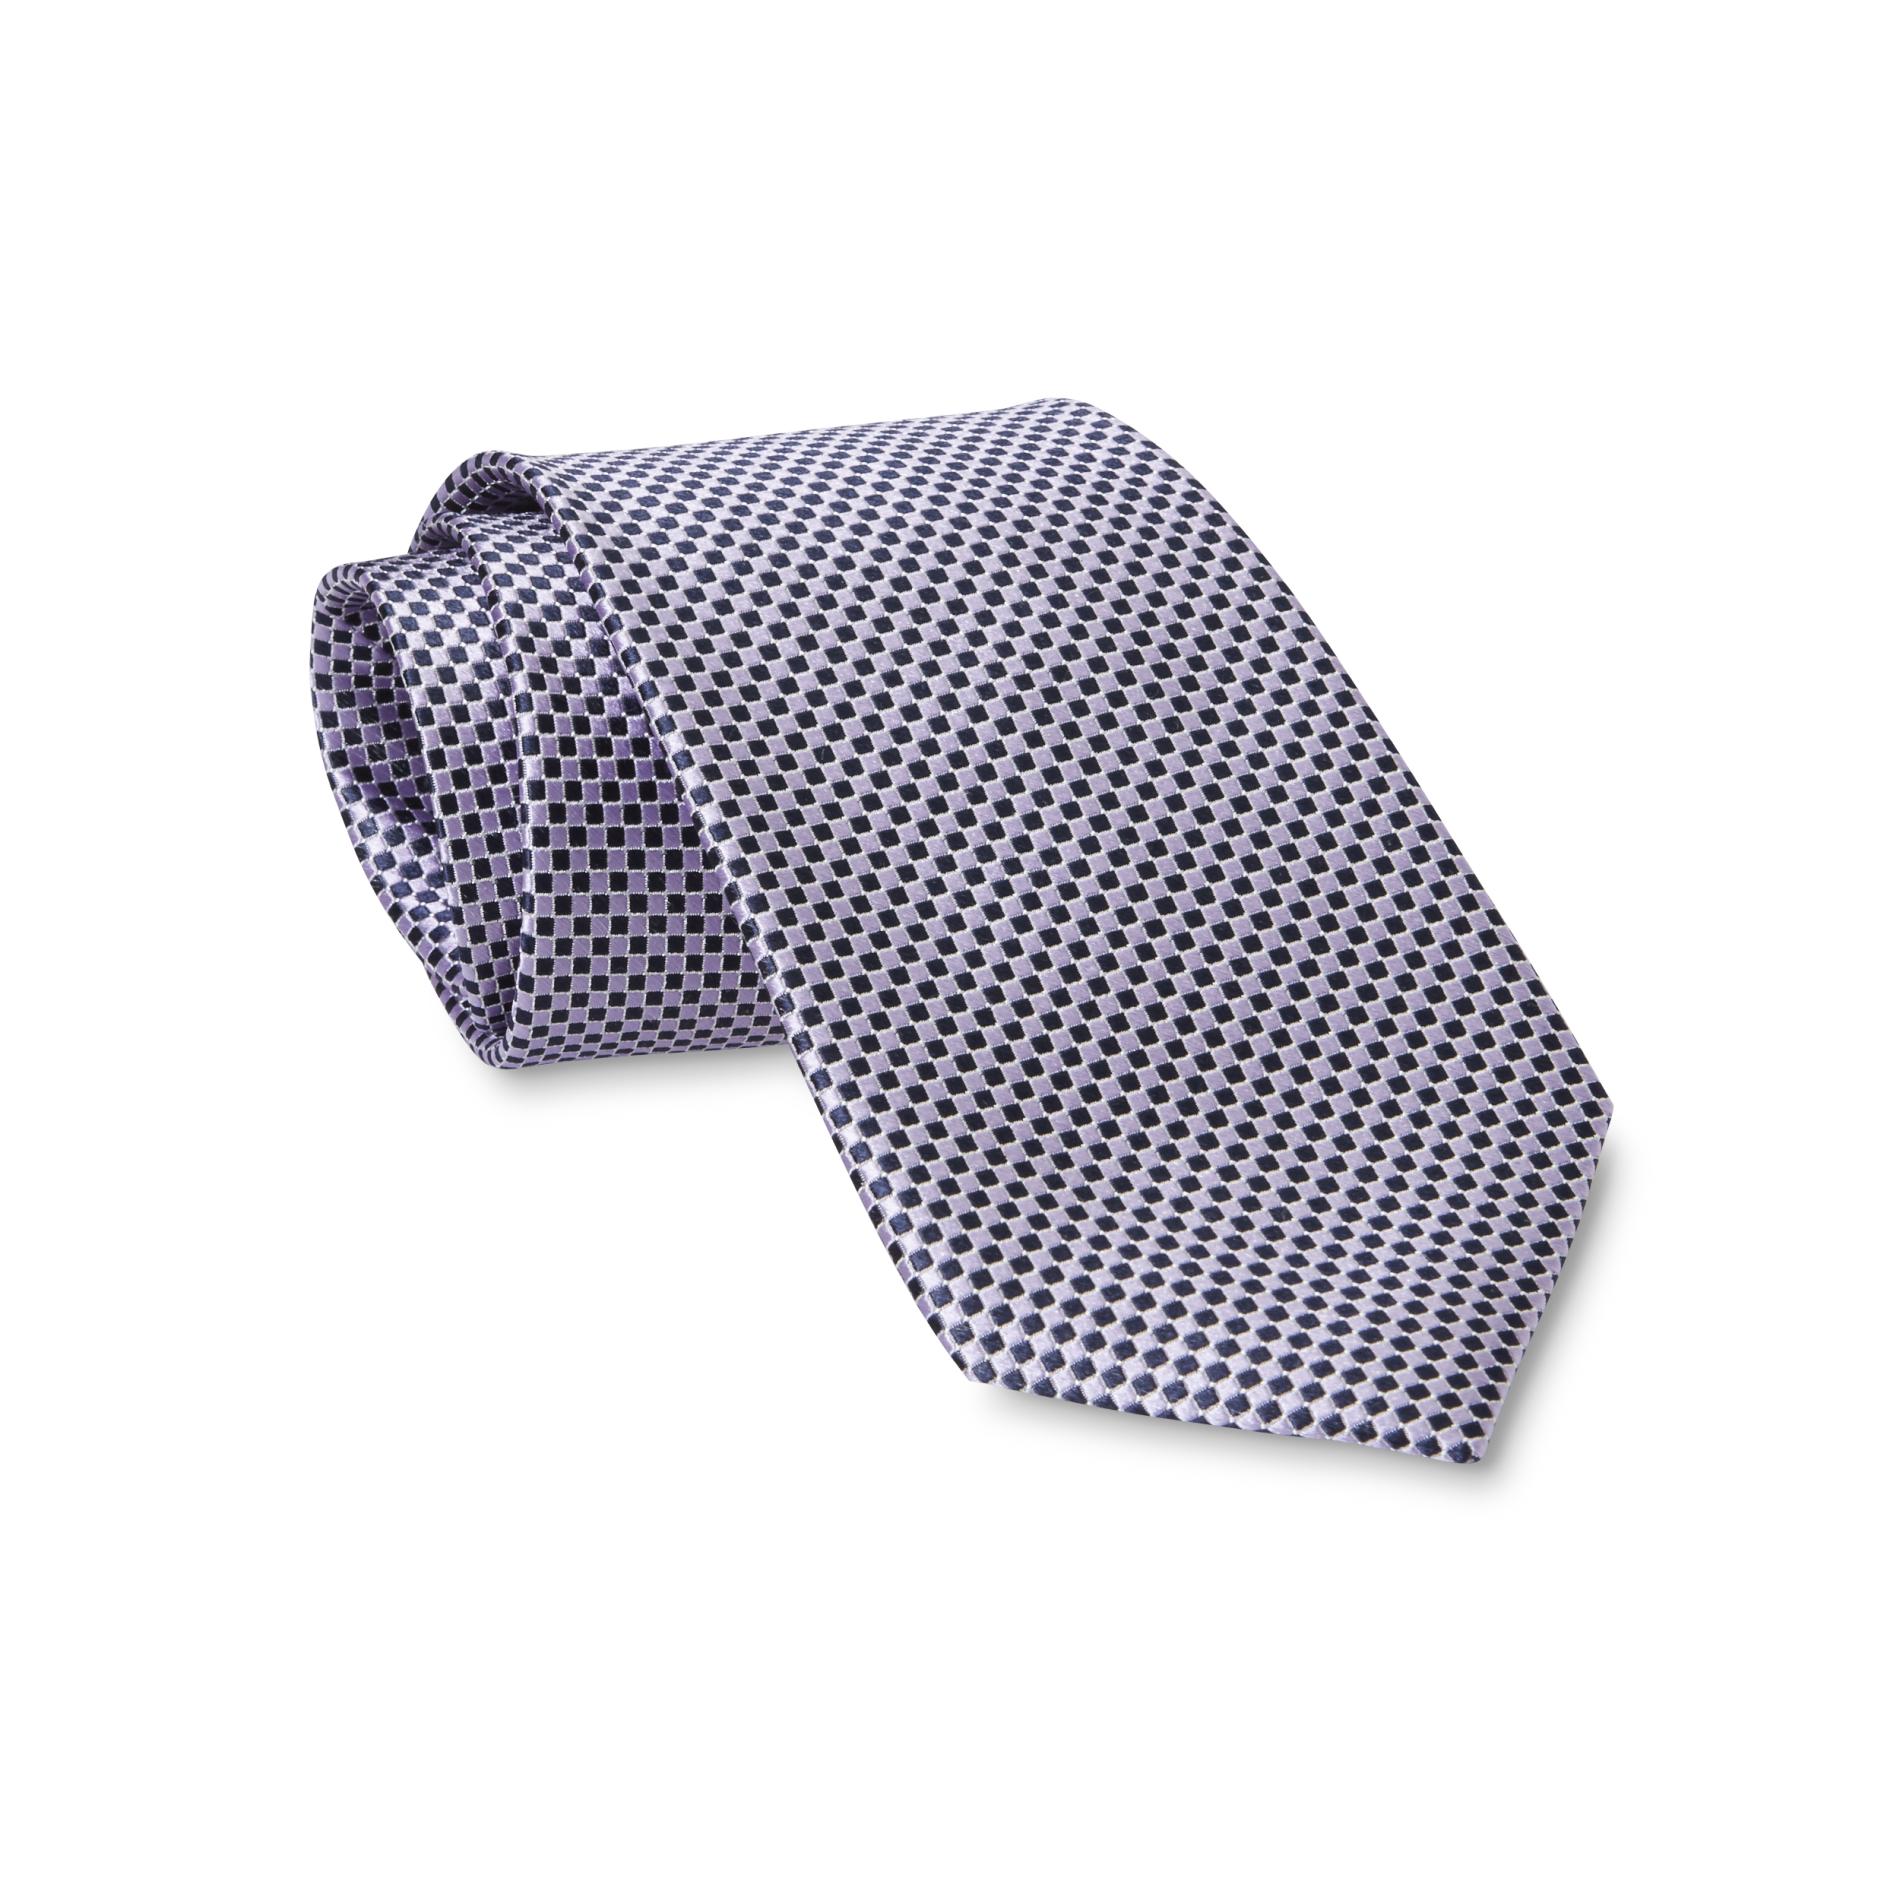 Covington Men's Necktie - Checkered